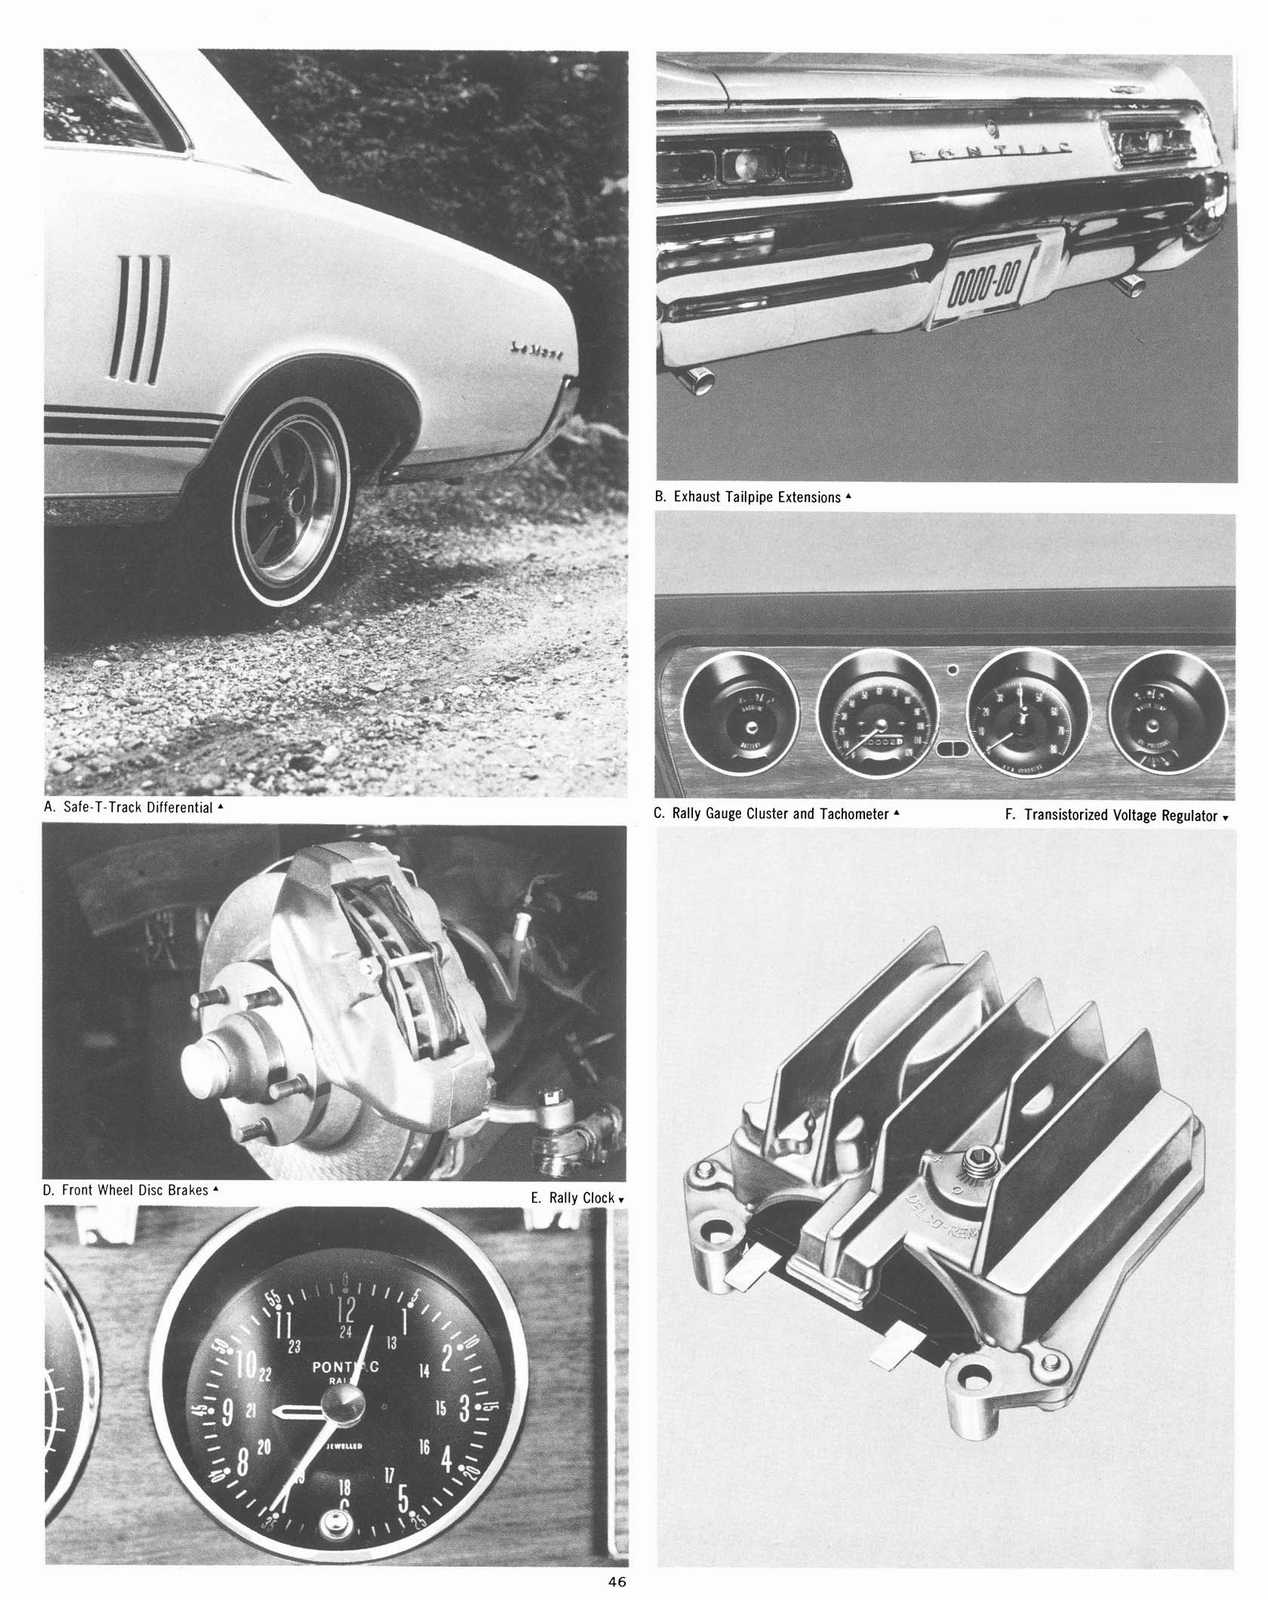 n_1967 Pontiac Accessories-46.jpg